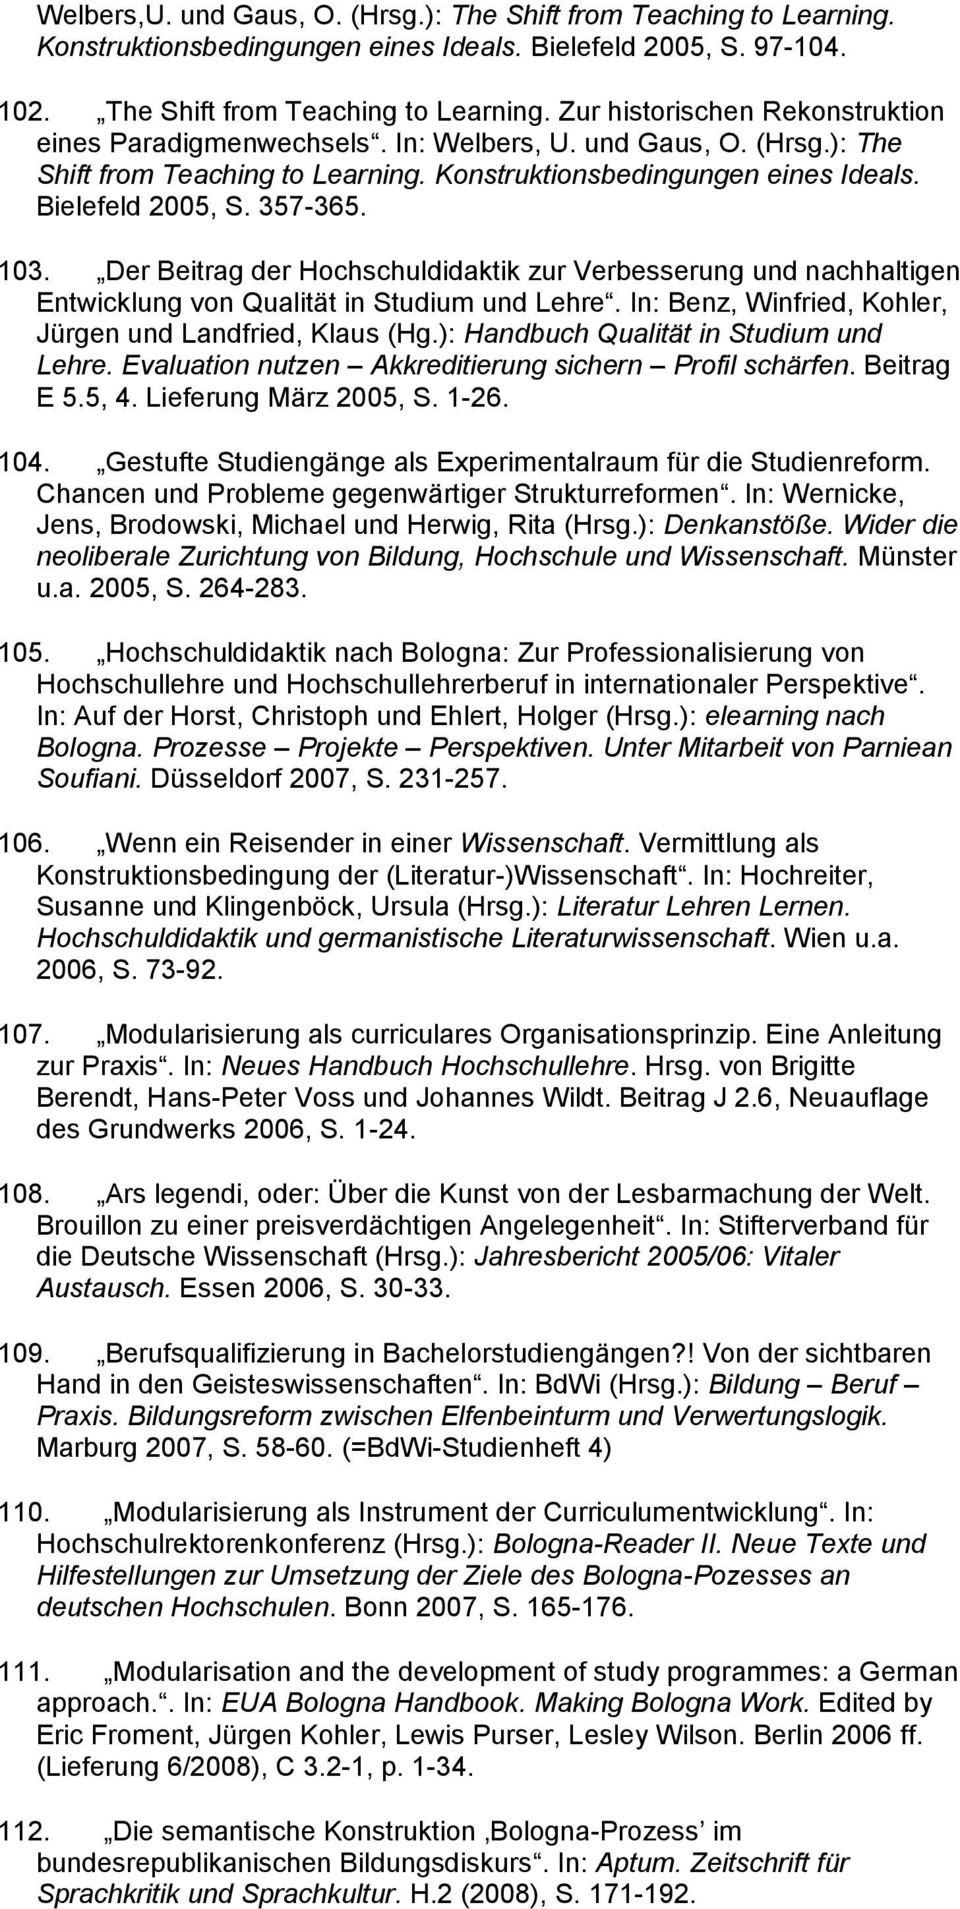 Der Beitrag der Hochschuldidaktik zur Verbesserung und nachhaltigen Entwicklung von Qualität in Studium und Lehre. In: Benz, Winfried, Kohler, Jürgen und Landfried, Klaus (Hg.